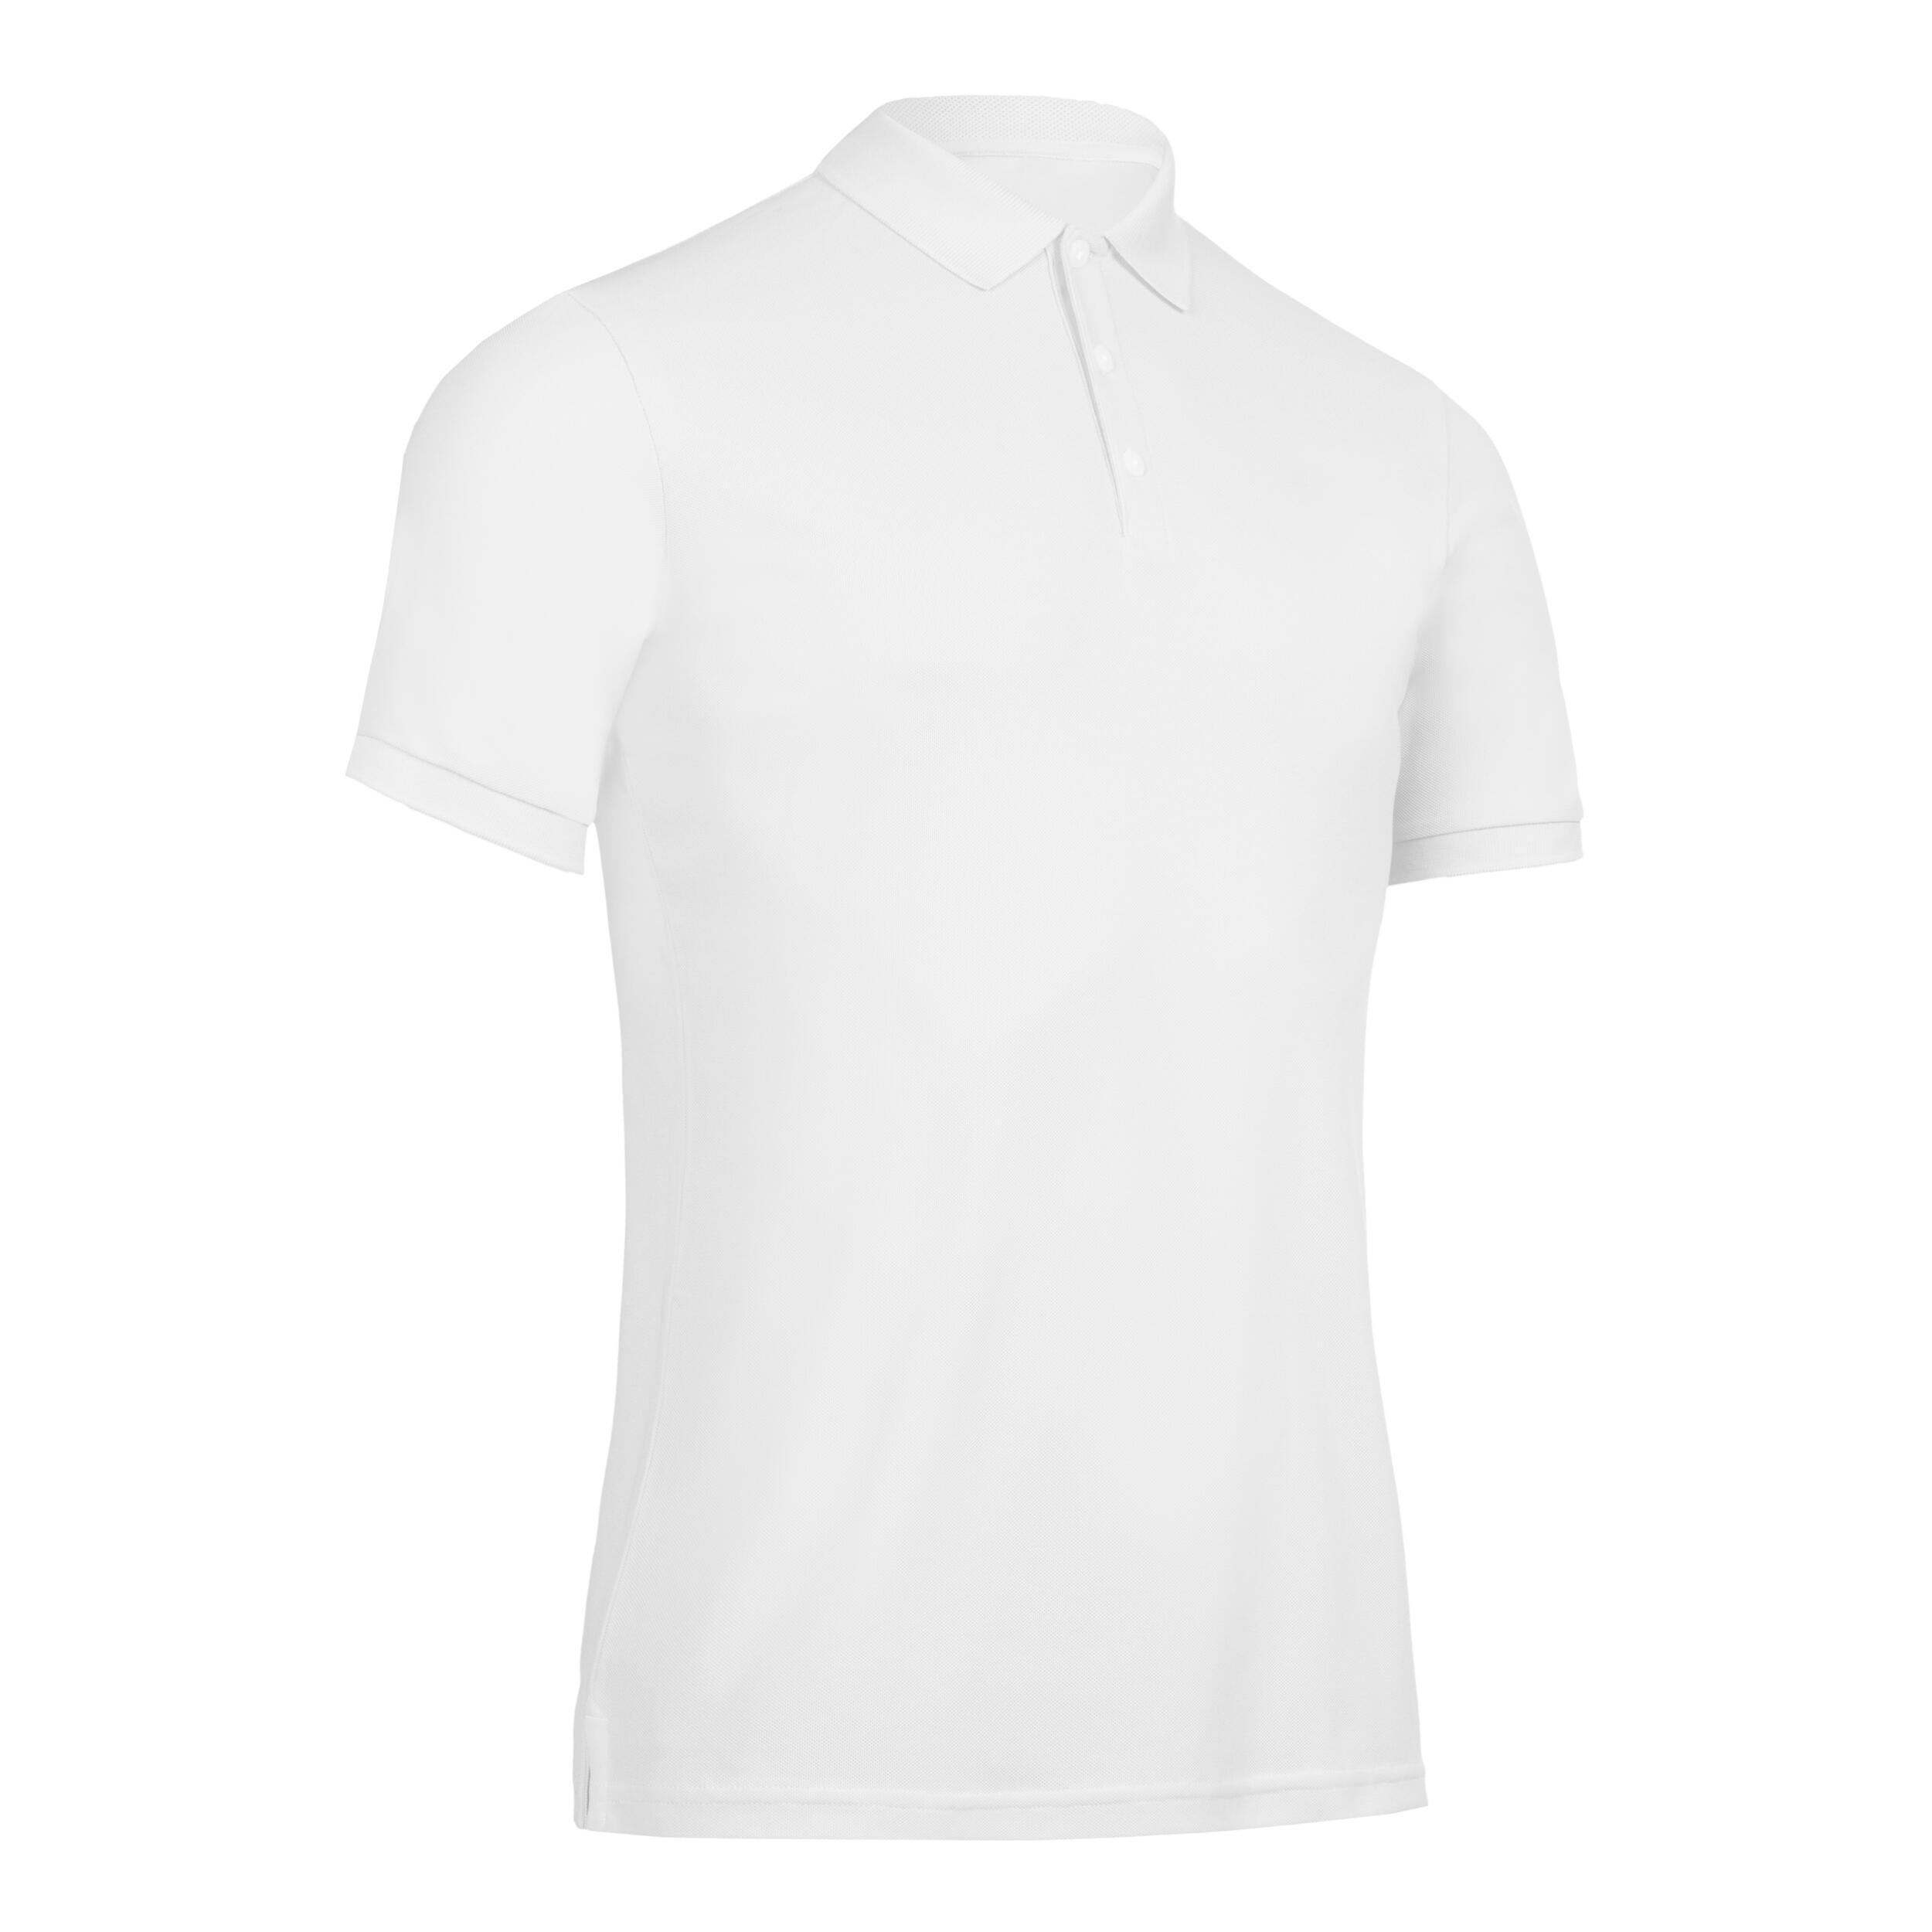 Refurbished Mens golf short-sleeved polo shirt - A Grade 1/6